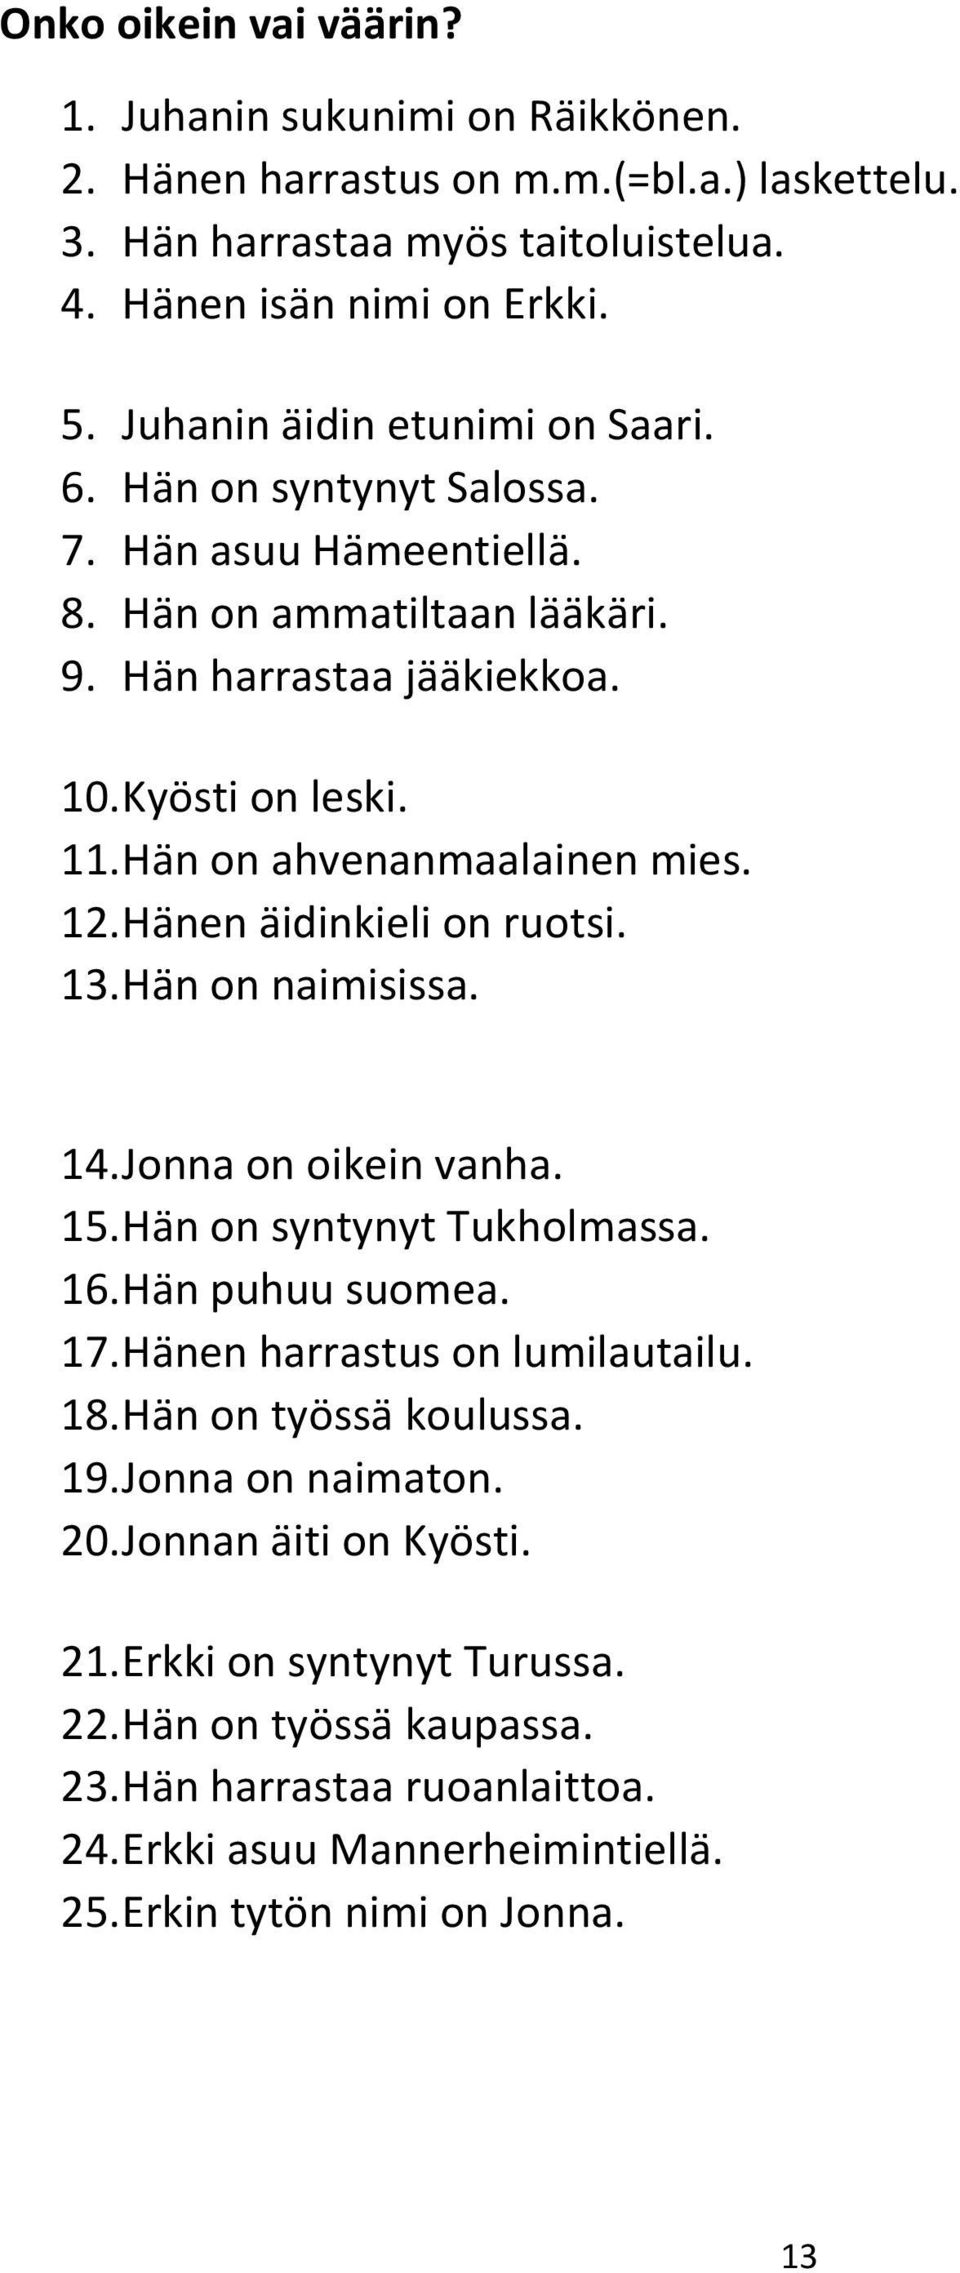 Hän on ahvenanmaalainen mies. 12. Hänen äidinkieli on ruotsi. 13. Hän on naimisissa. 14. Jonna on oikein vanha. 15. Hän on syntynyt Tukholmassa. 16. Hän puhuu suomea. 17.